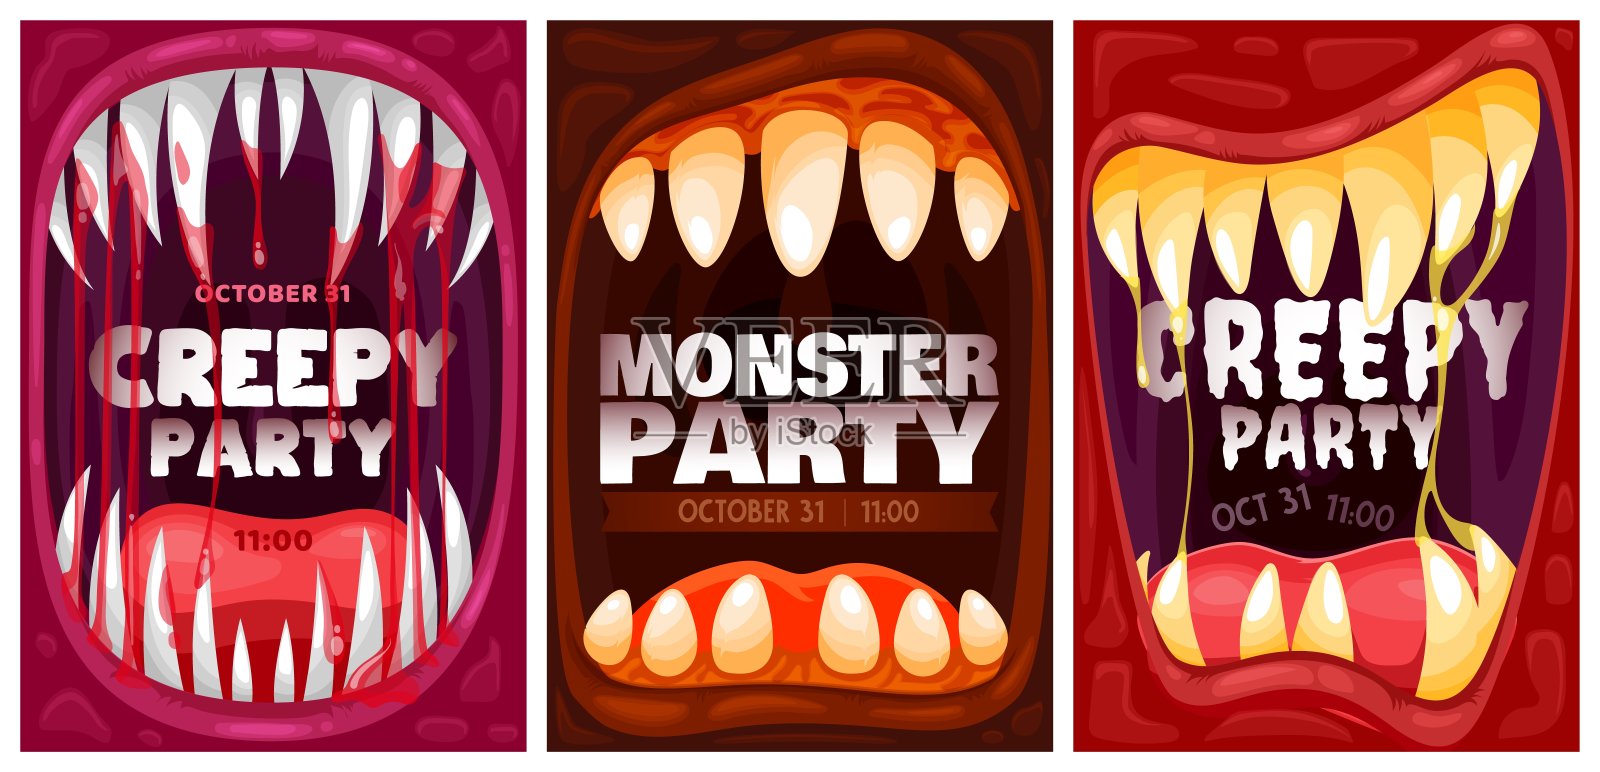 万圣节派对海报怪物吸血鬼血牙设计模板素材